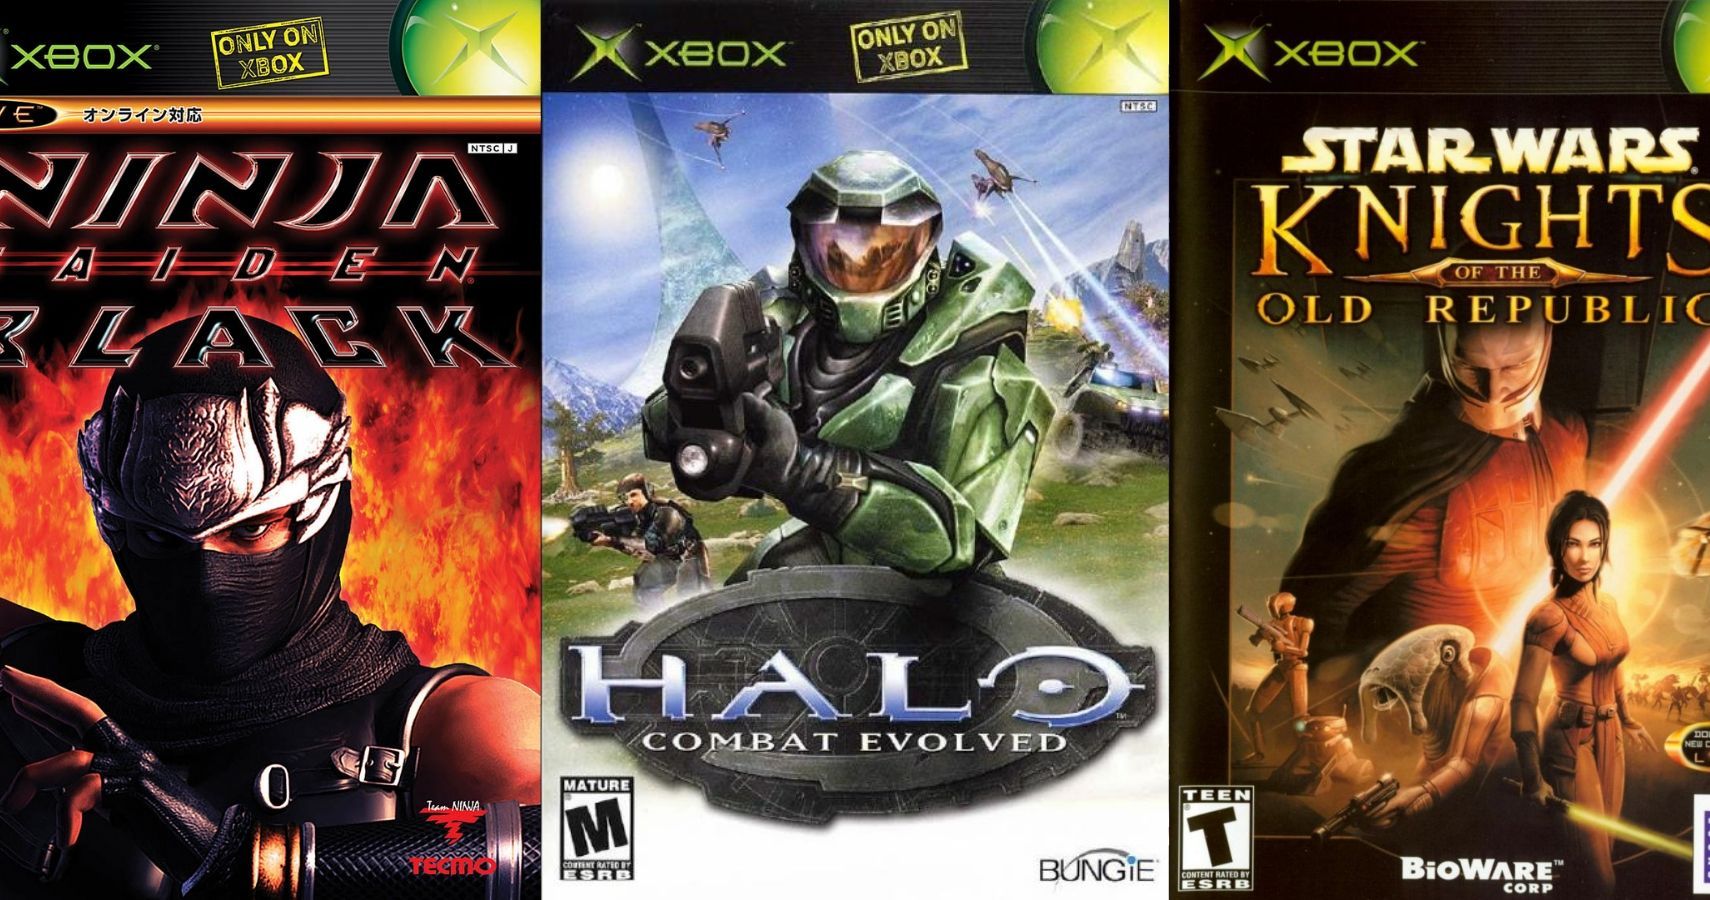 Top 10 Best Original Xbox Games 